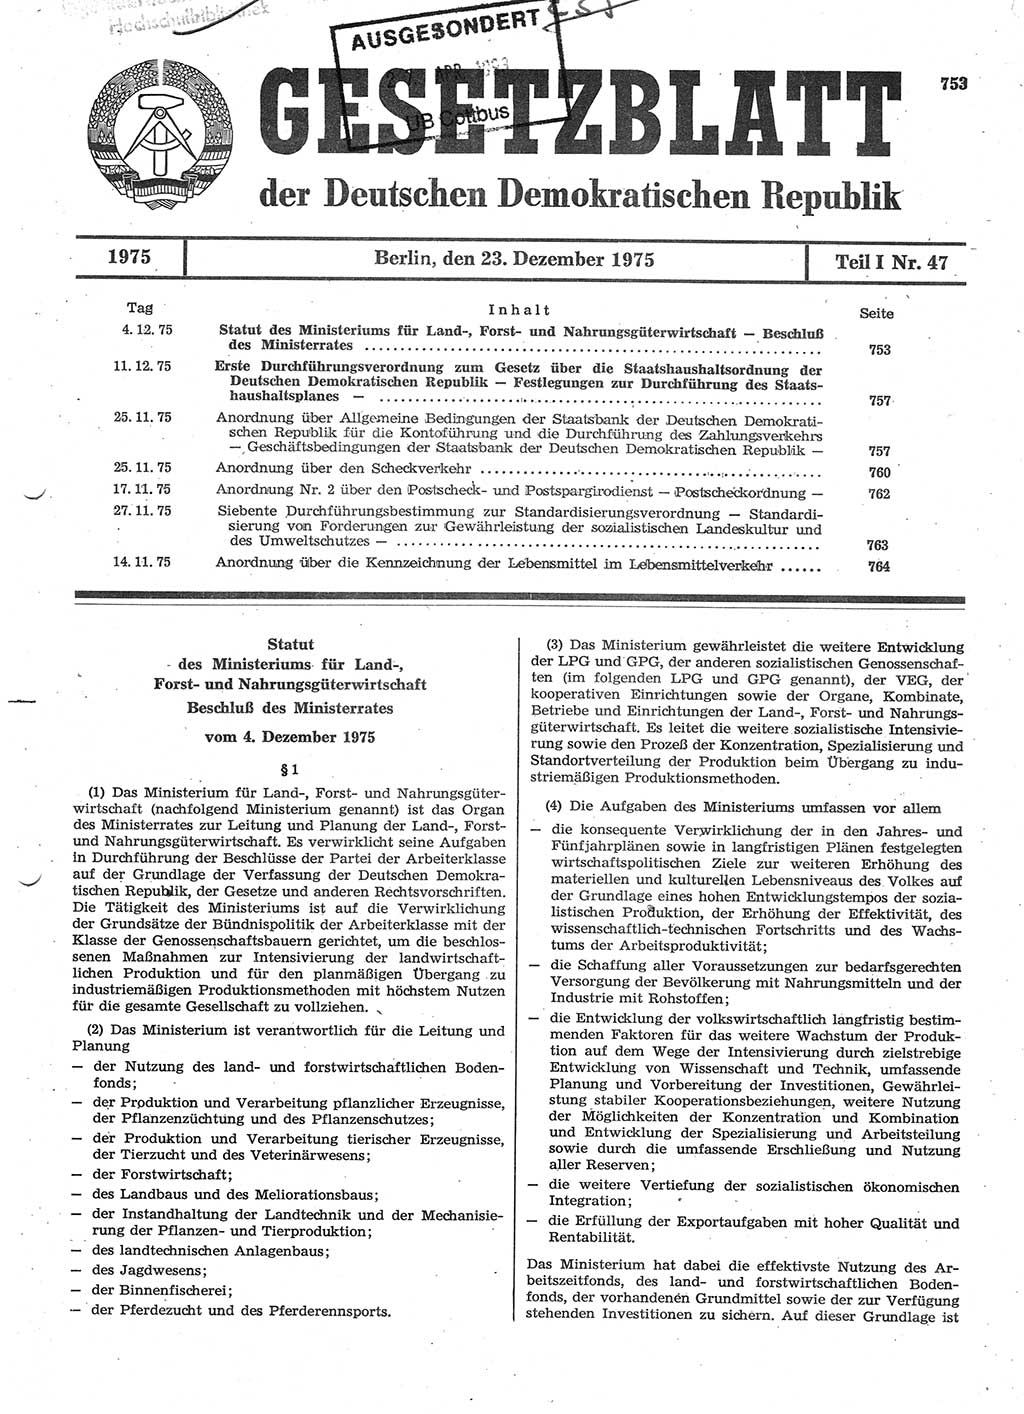 Gesetzblatt (GBl.) der Deutschen Demokratischen Republik (DDR) Teil Ⅰ 1975, Seite 753 (GBl. DDR Ⅰ 1975, S. 753)